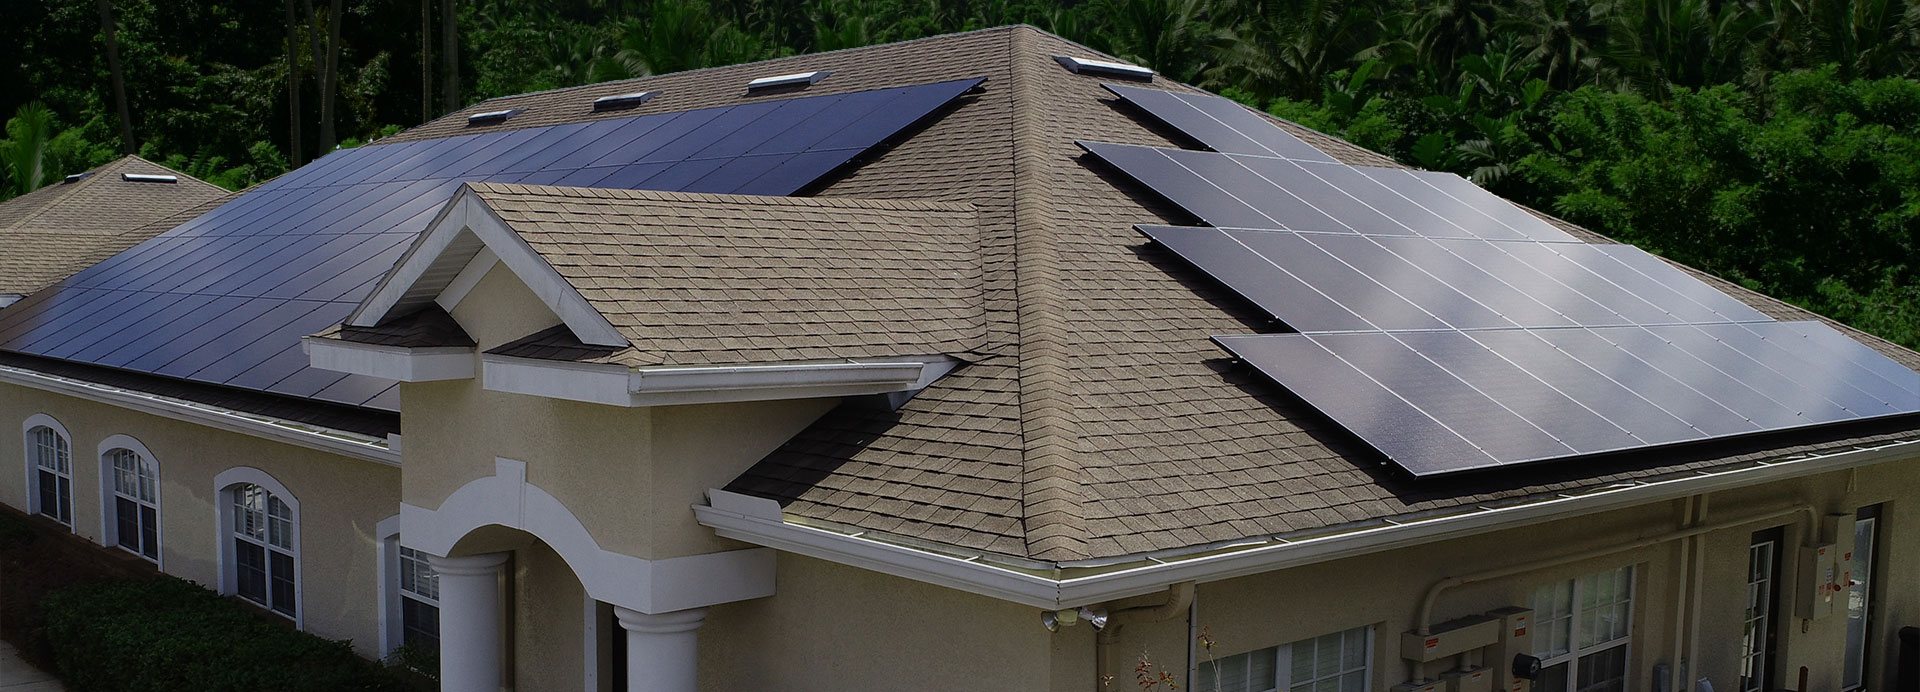 Tampa Bay Solar Installer